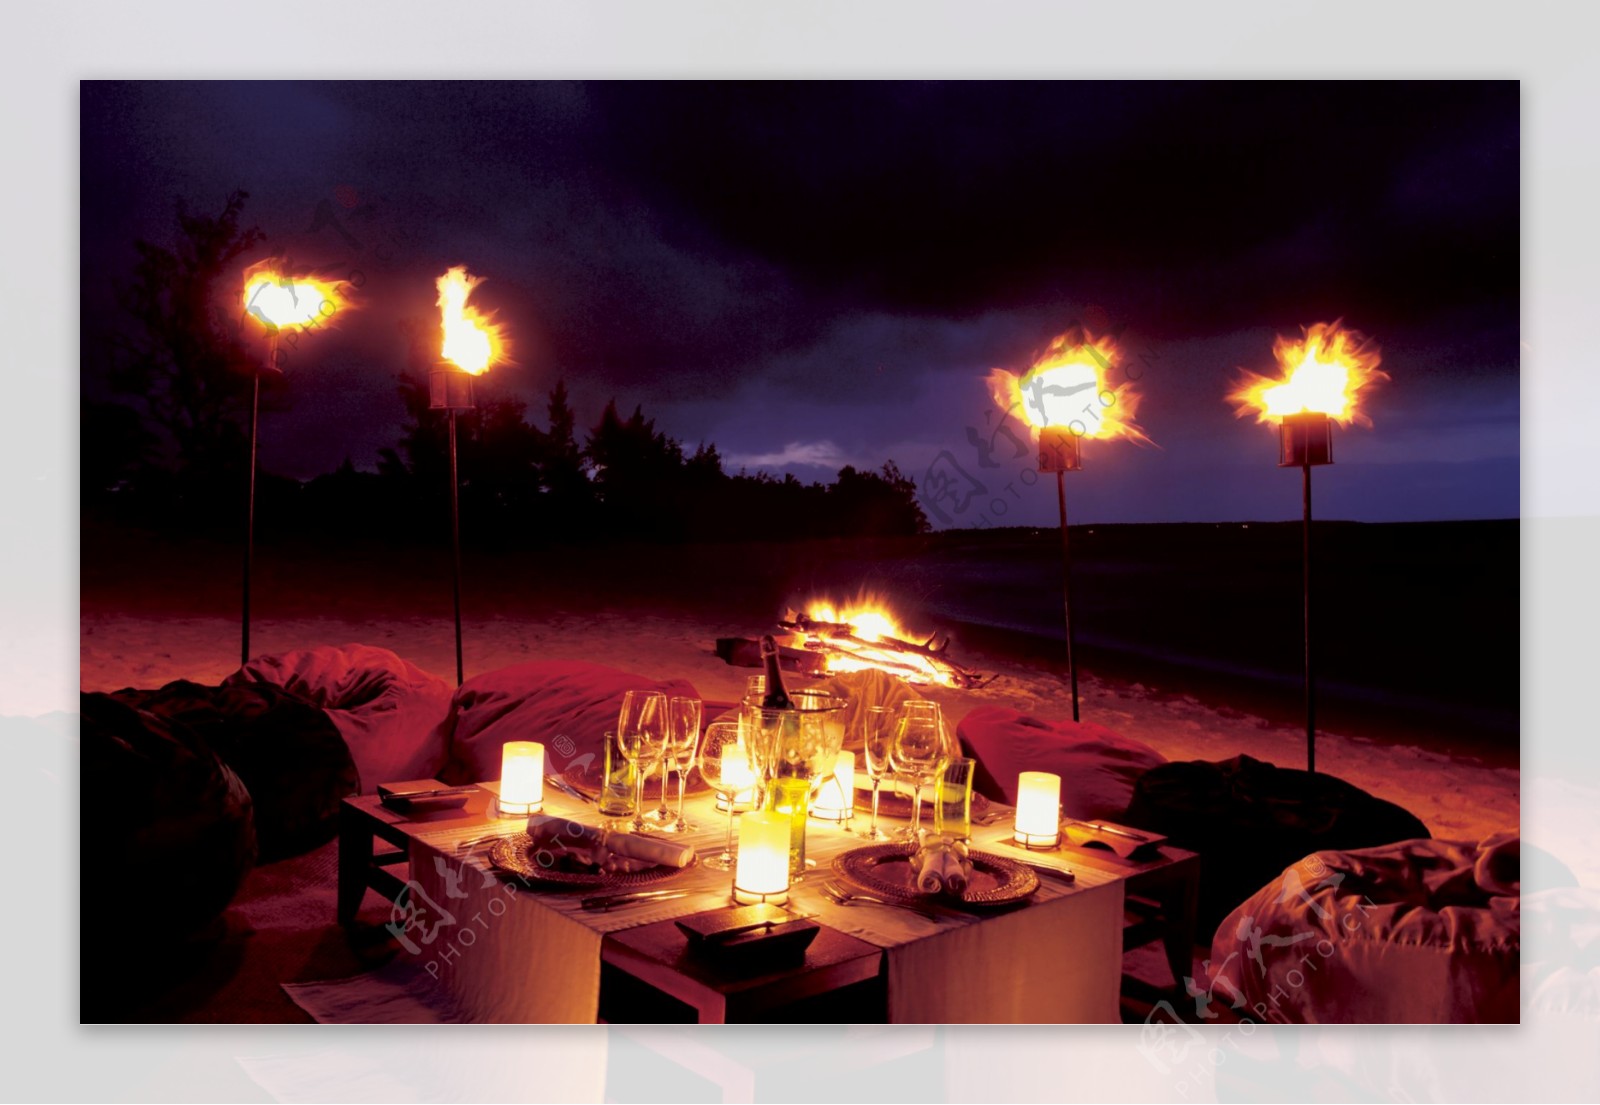 毛里求斯酒店沙滩夜景图片